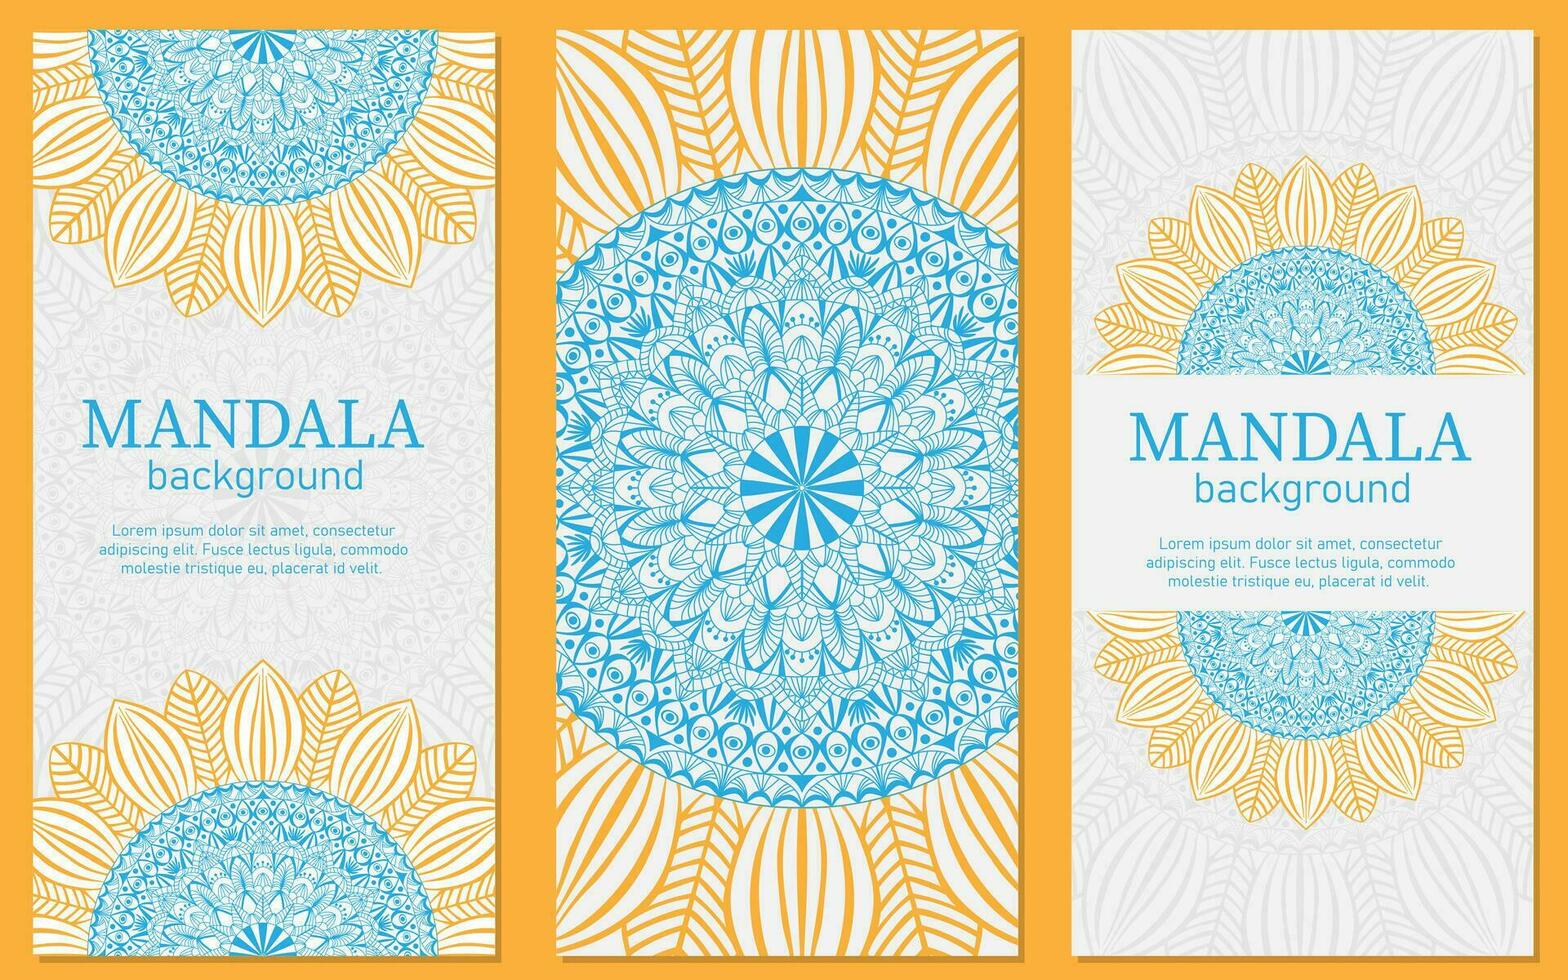 einstellen von bunt Karten mit das Bild von ein kreisförmig Sonnenblume Mandala zum drucken, Poster, Abdeckung, Broschüre, Flyer, Banner. vektor